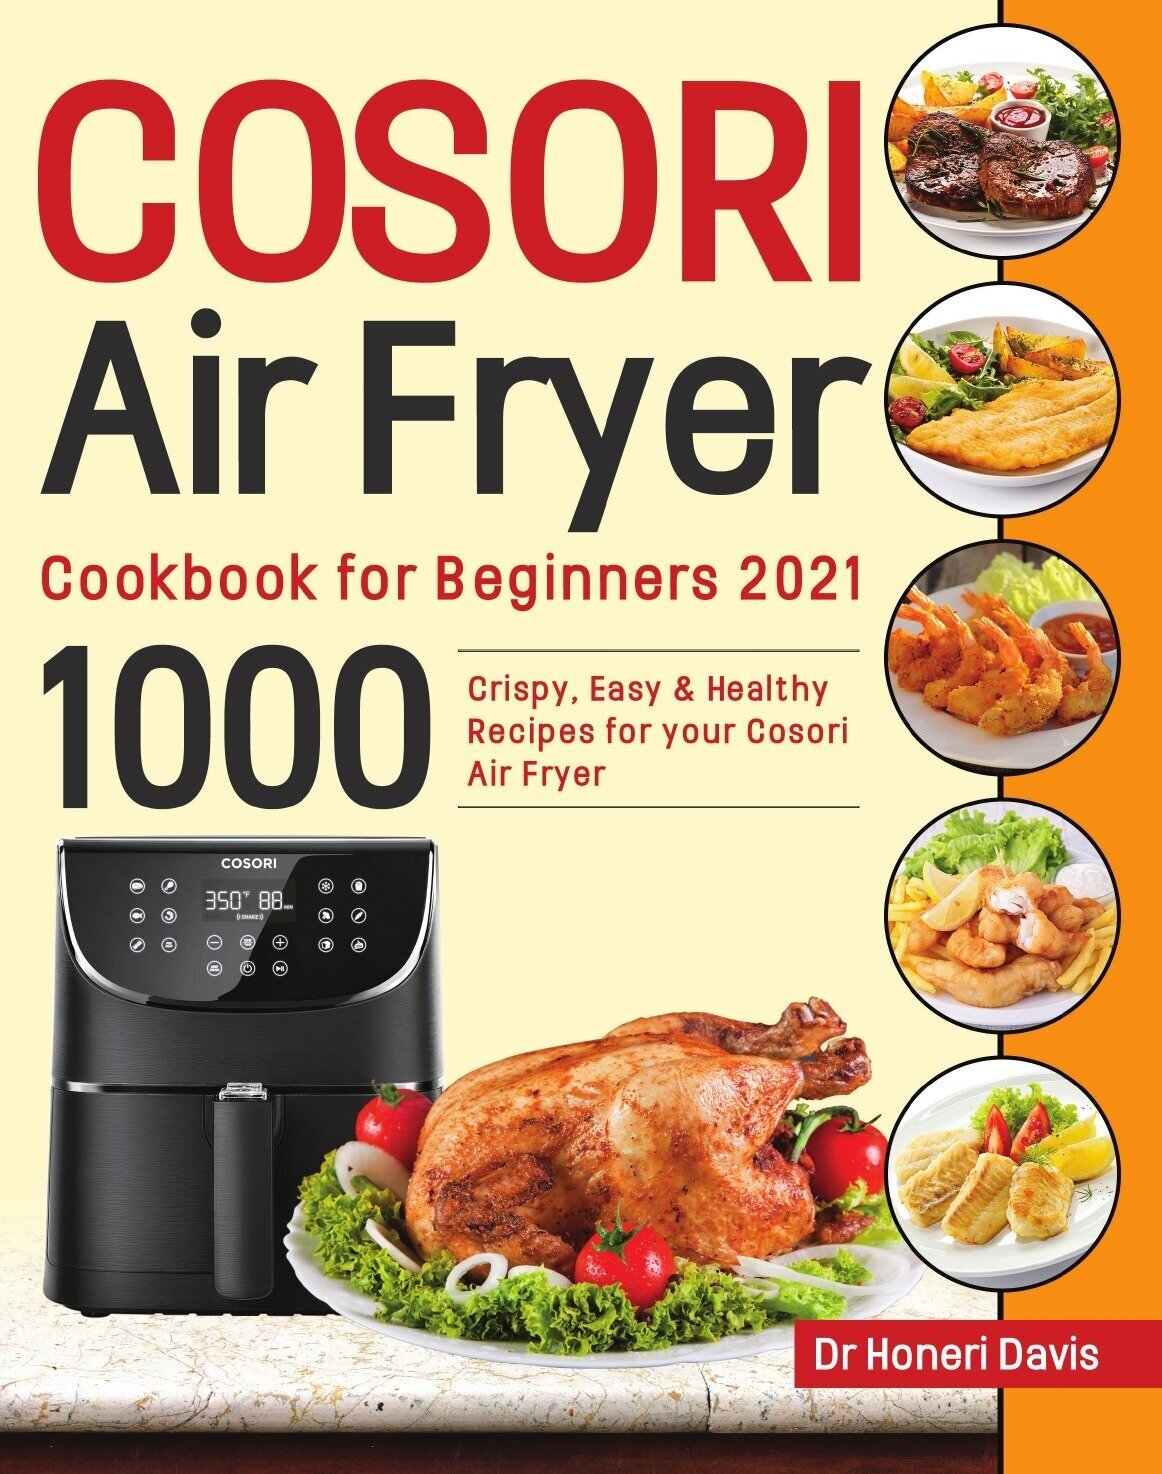 Cosori Air Fryer Cookbook for Beginners 2021. 1000 knusprige, einfache & gesunde Rezepte für Ihre Cosori- Luftfritteuse